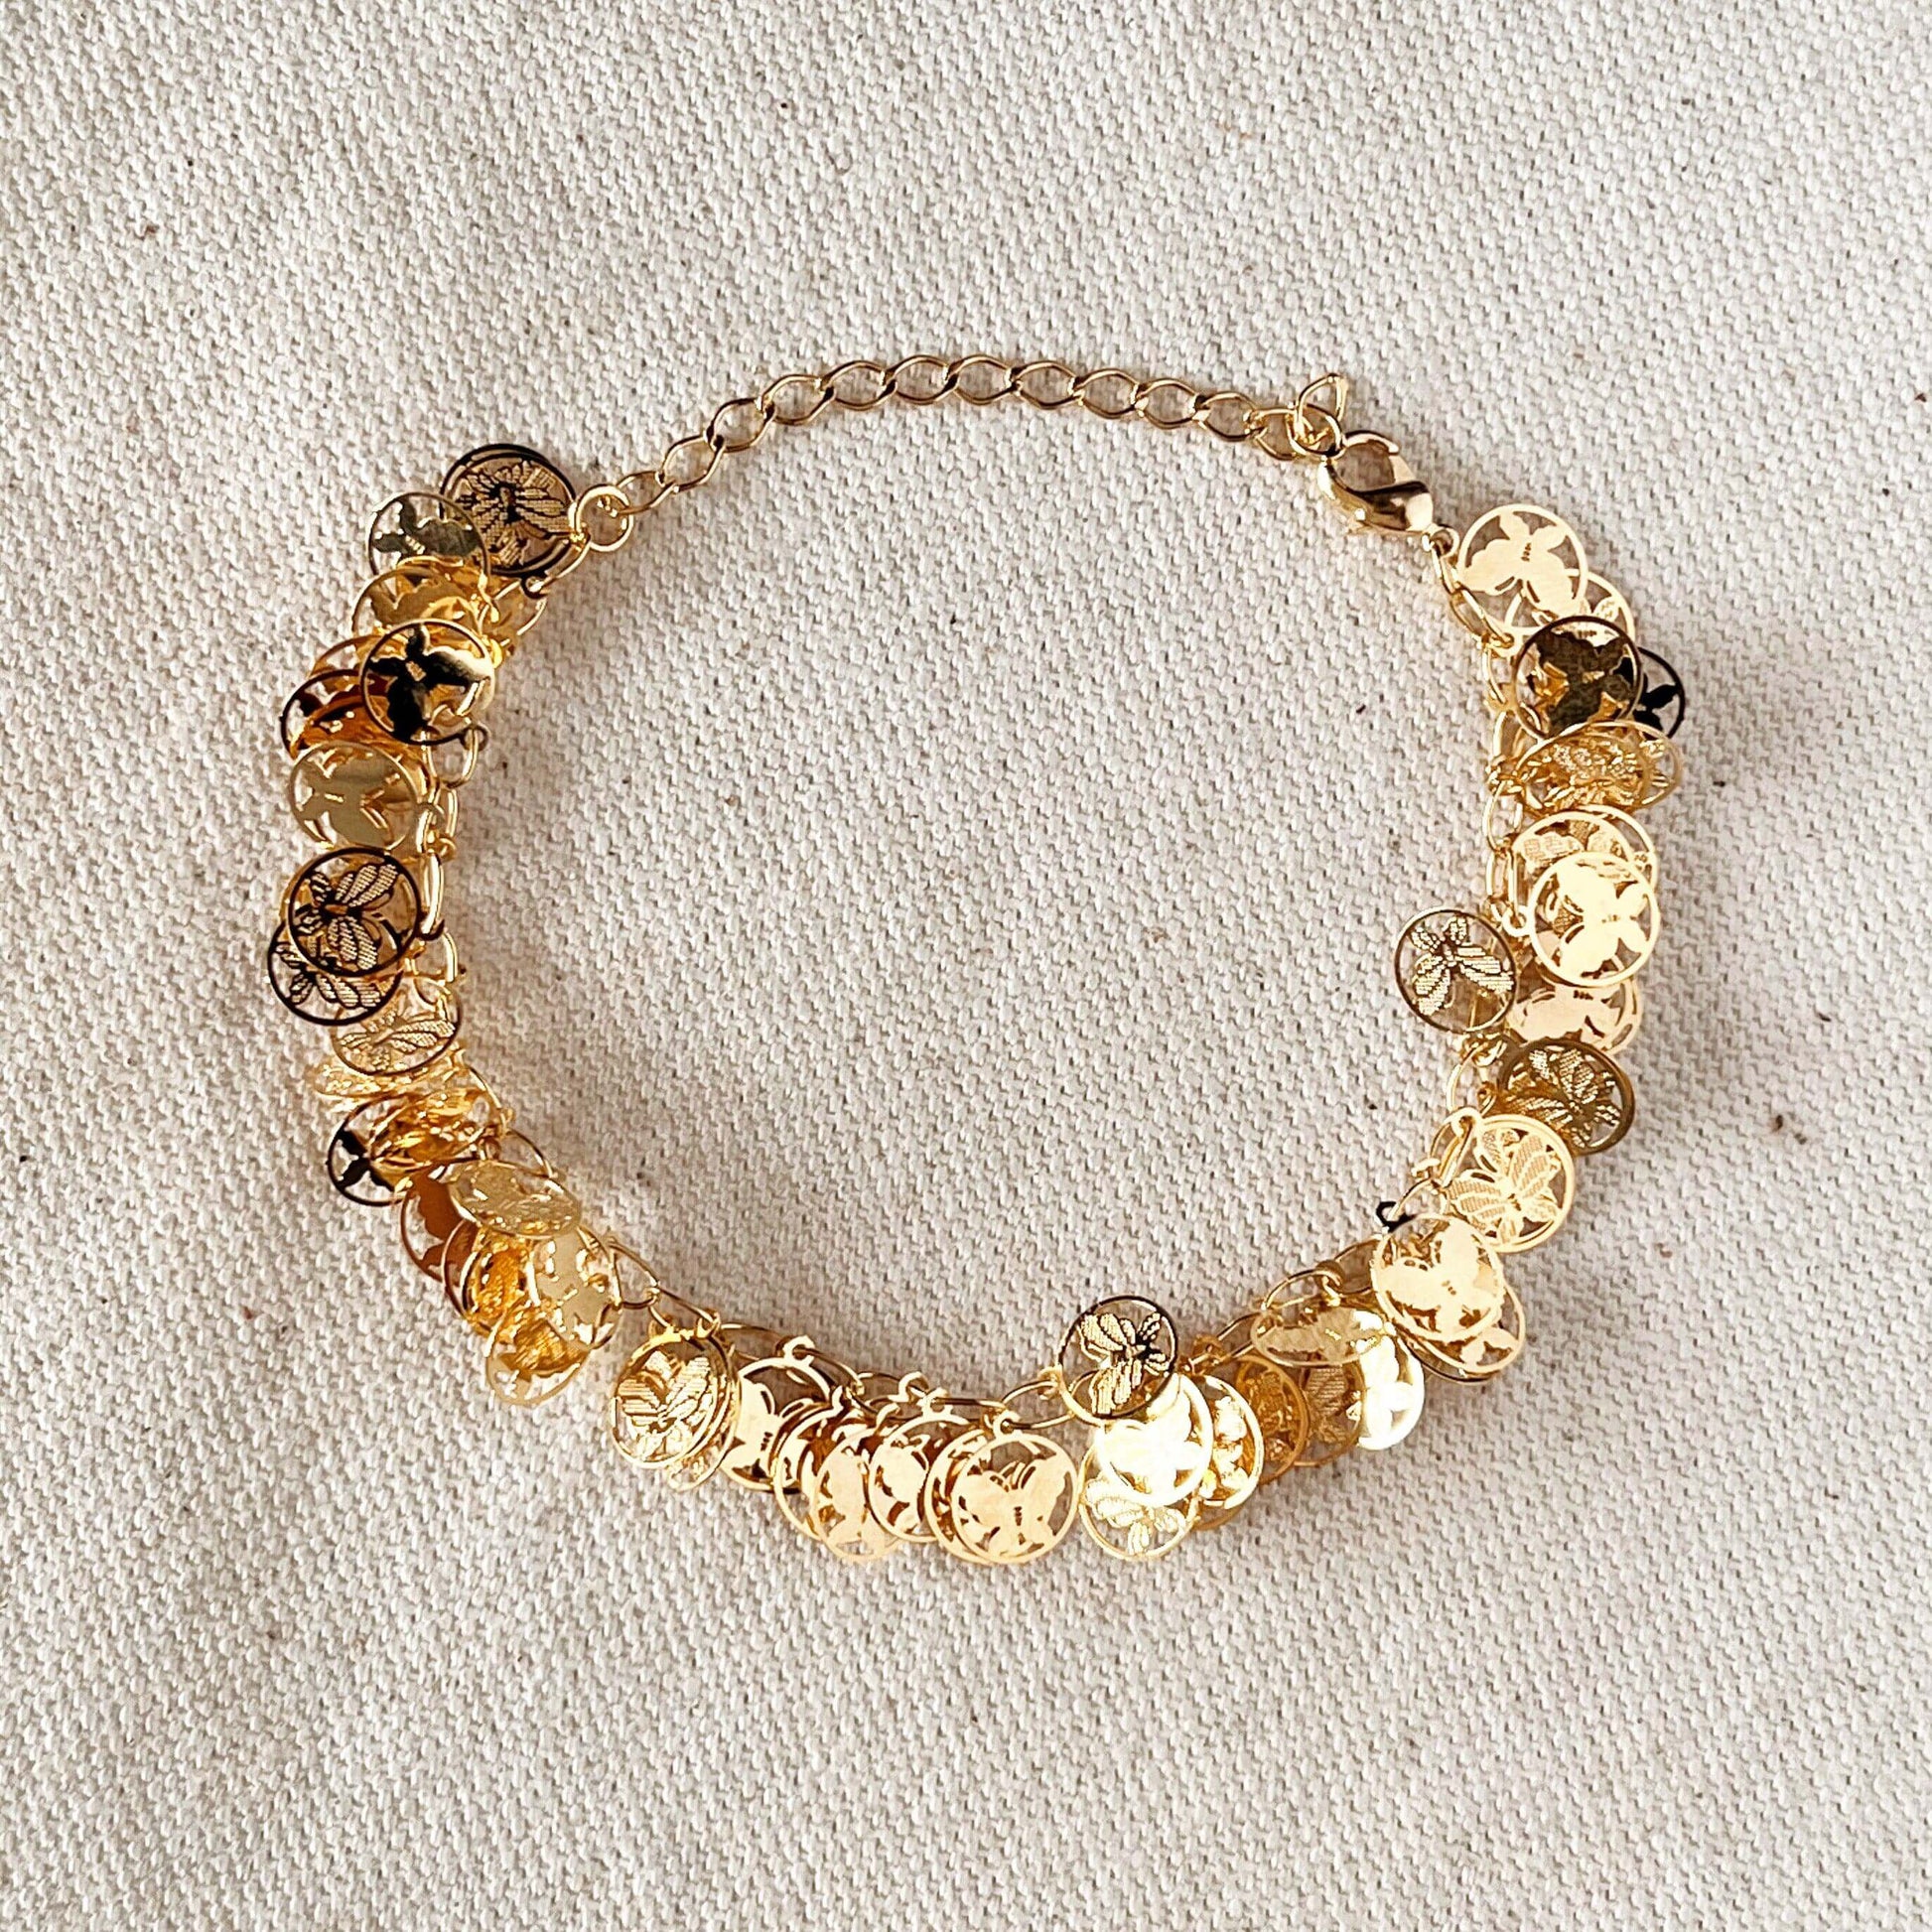 GoldFi 18k Gold Filled Butterfly Bracelet,